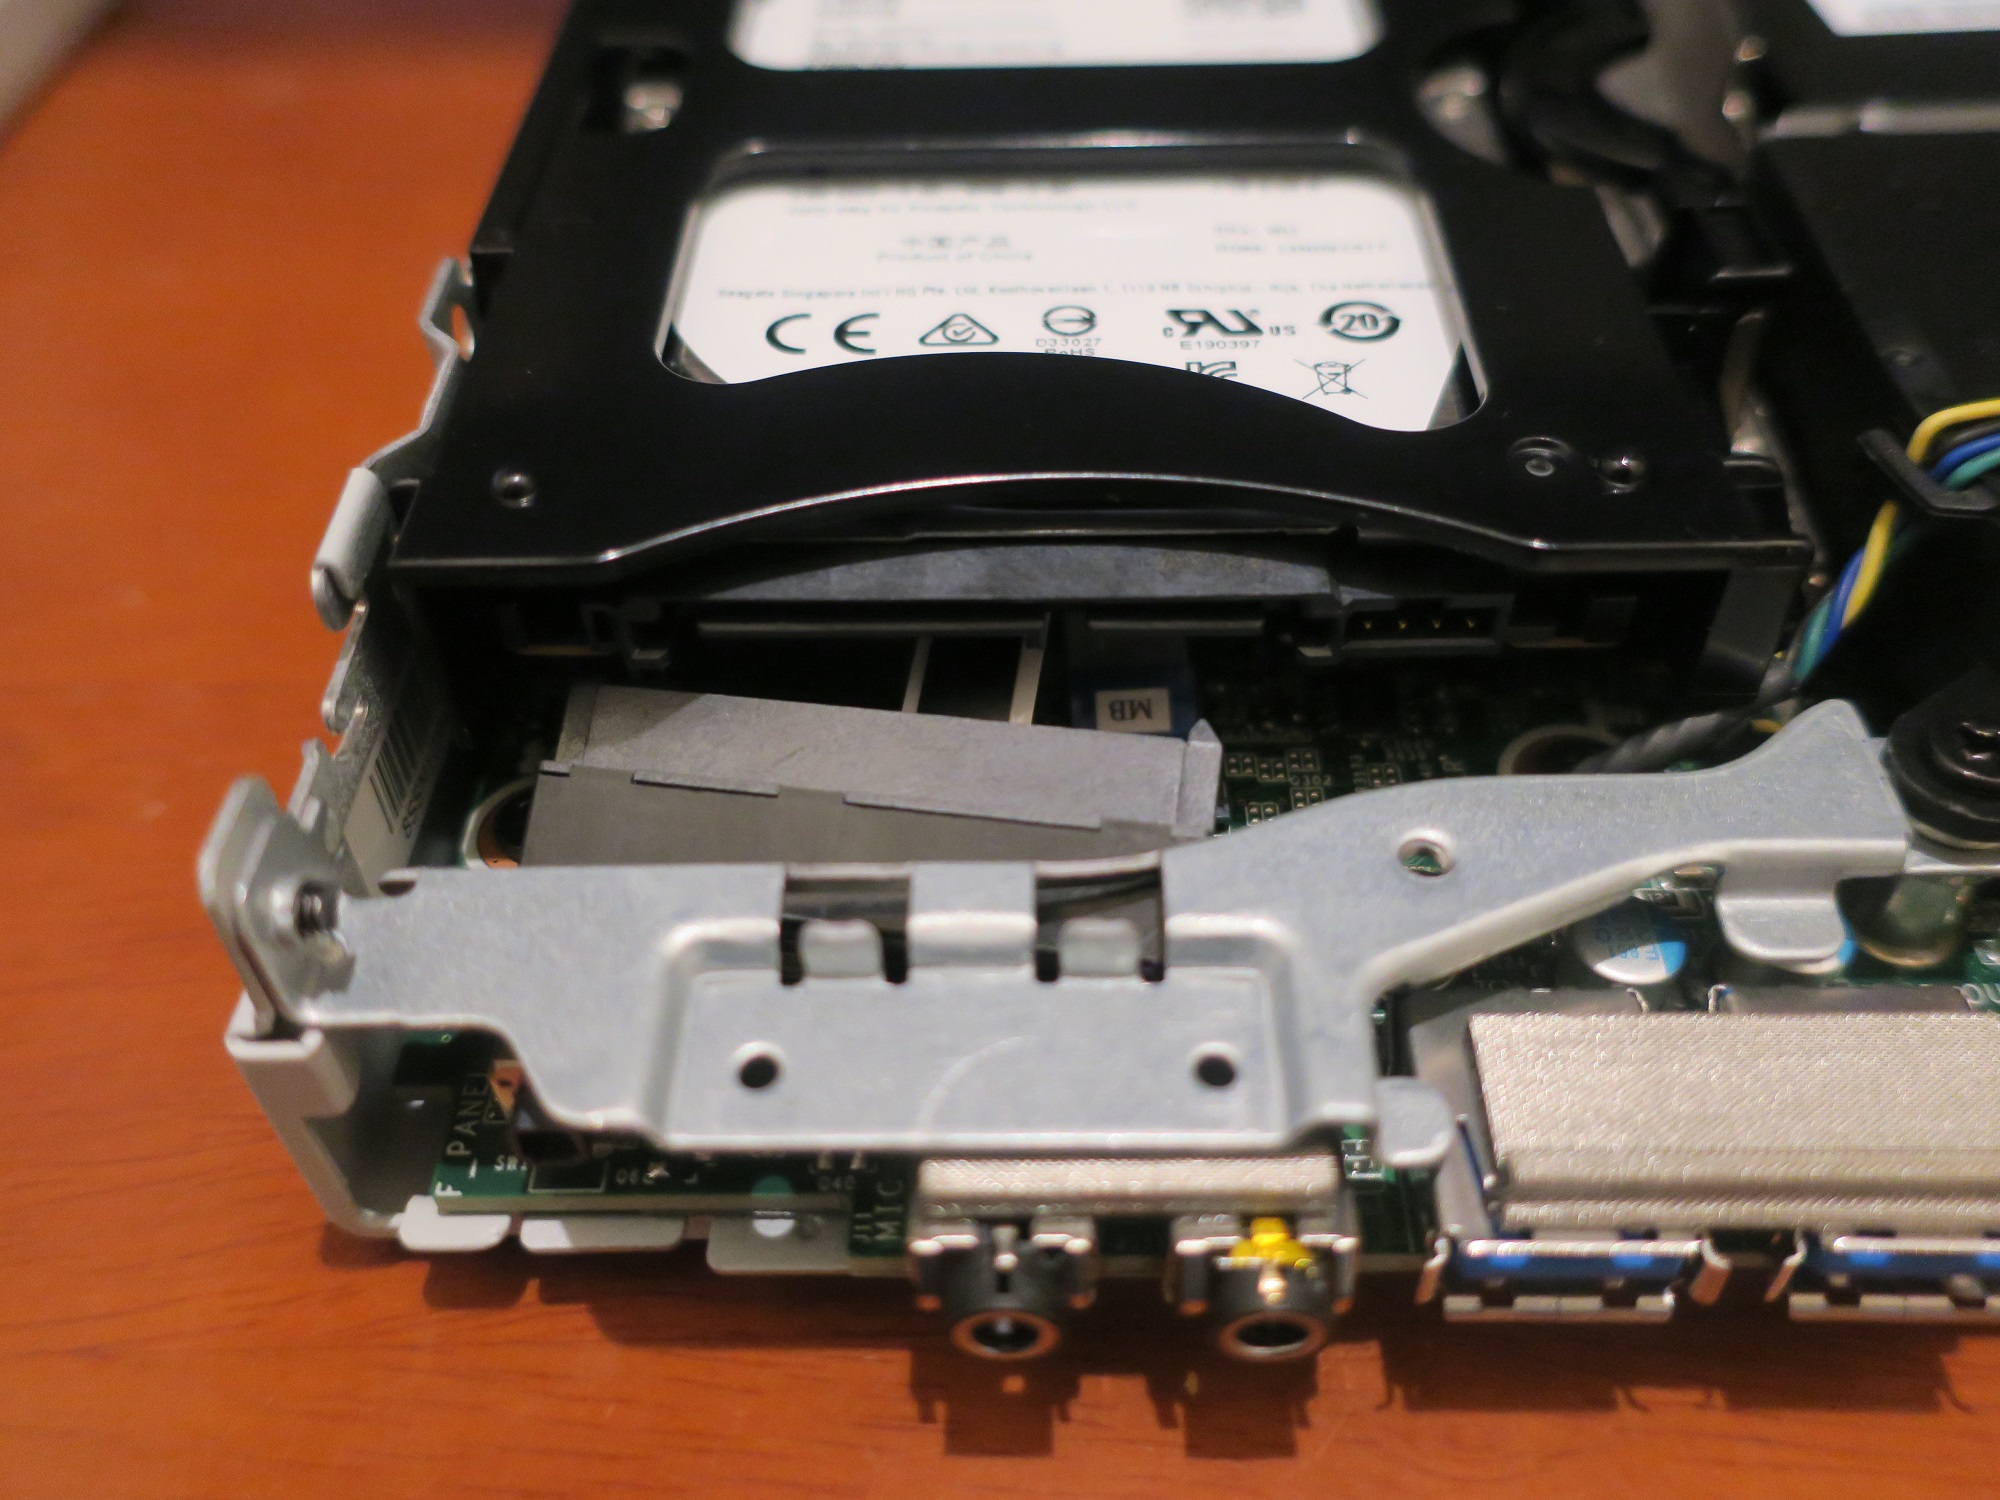 NEC デスクトップPC Mate スモールモデル MC-1 HDDのコネクタを外したところ